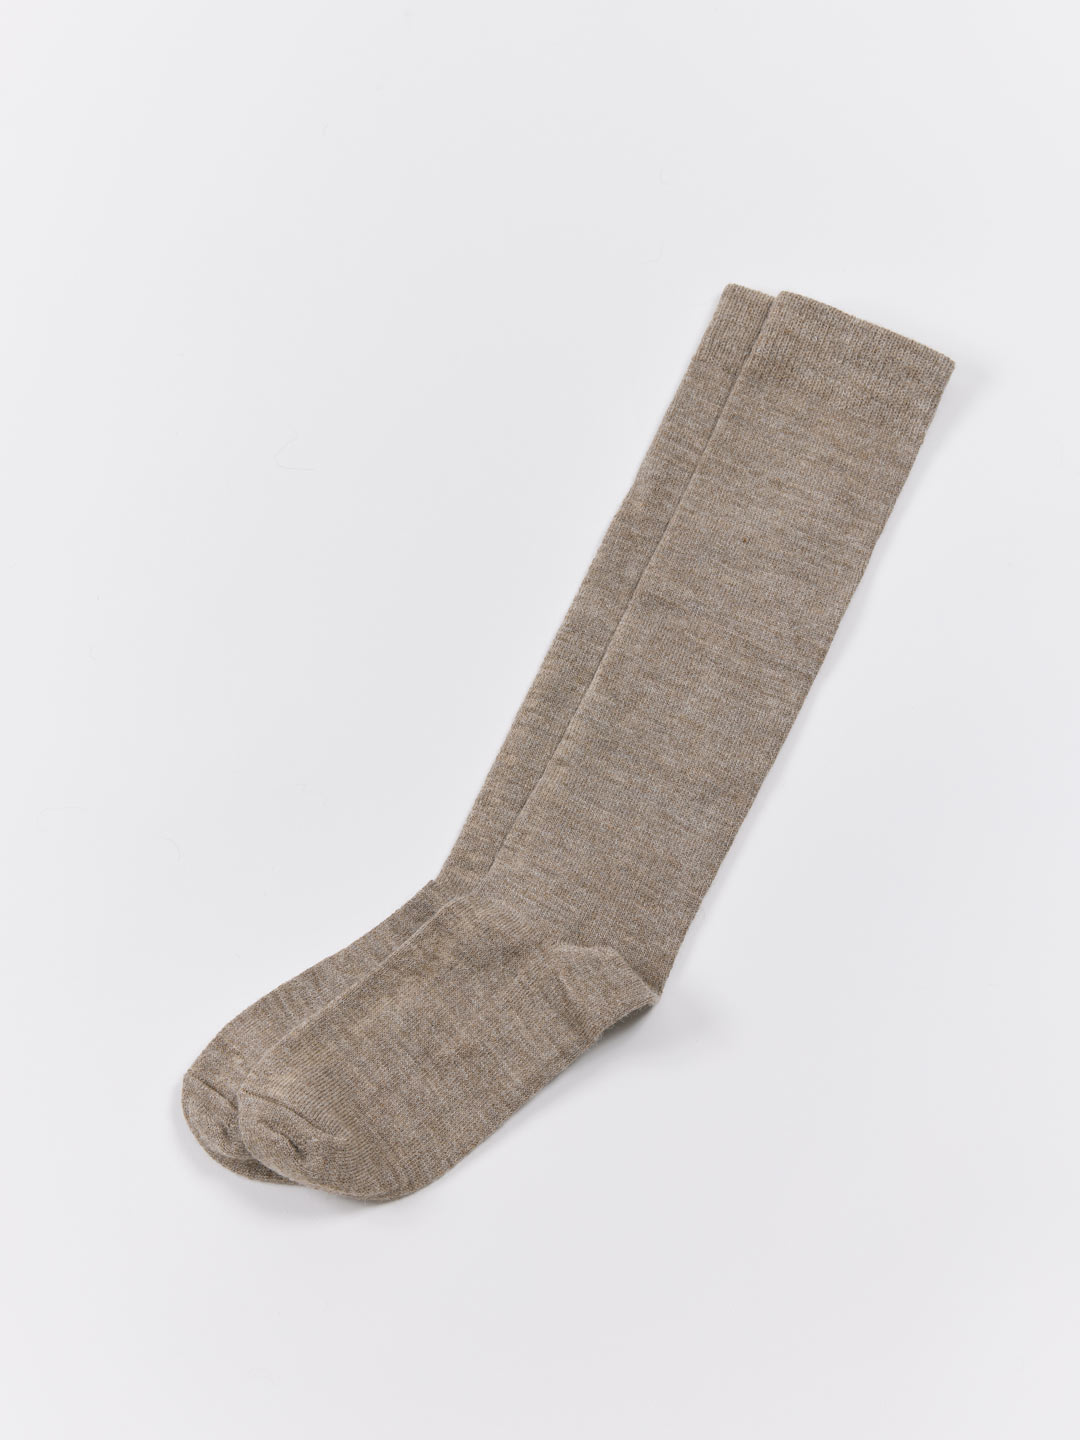 Tall Socks - Light Brown